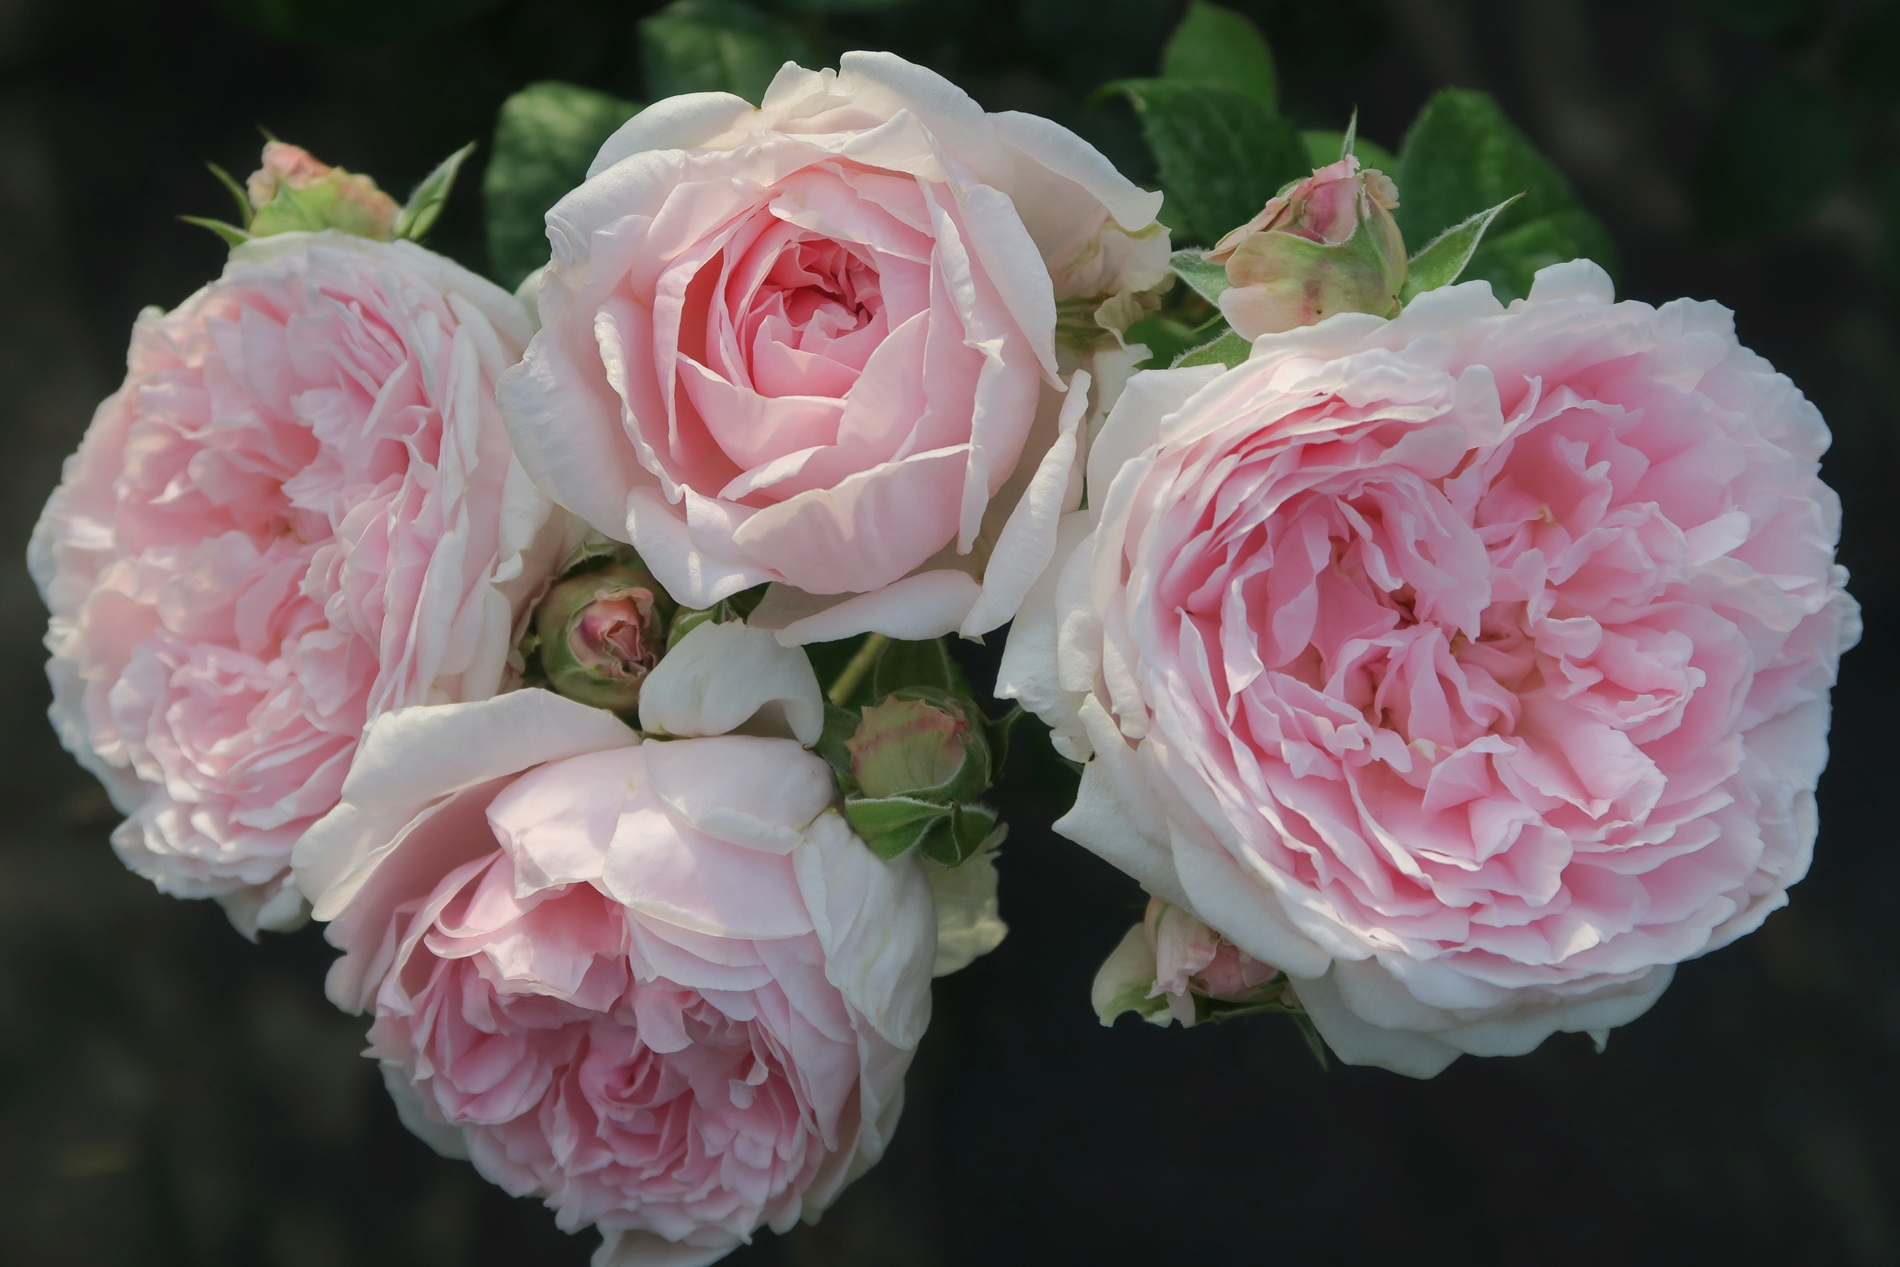 旧古河庭園 超 かわいくないですか イギリスのバラの育種家 デビット オースチンによって作られた エグランタイン です 花びらたっぷりのロゼット咲き イングリッシュローズを代表する素晴らしいバラ 旧古河庭園 バラ 休園中 ツイッターで